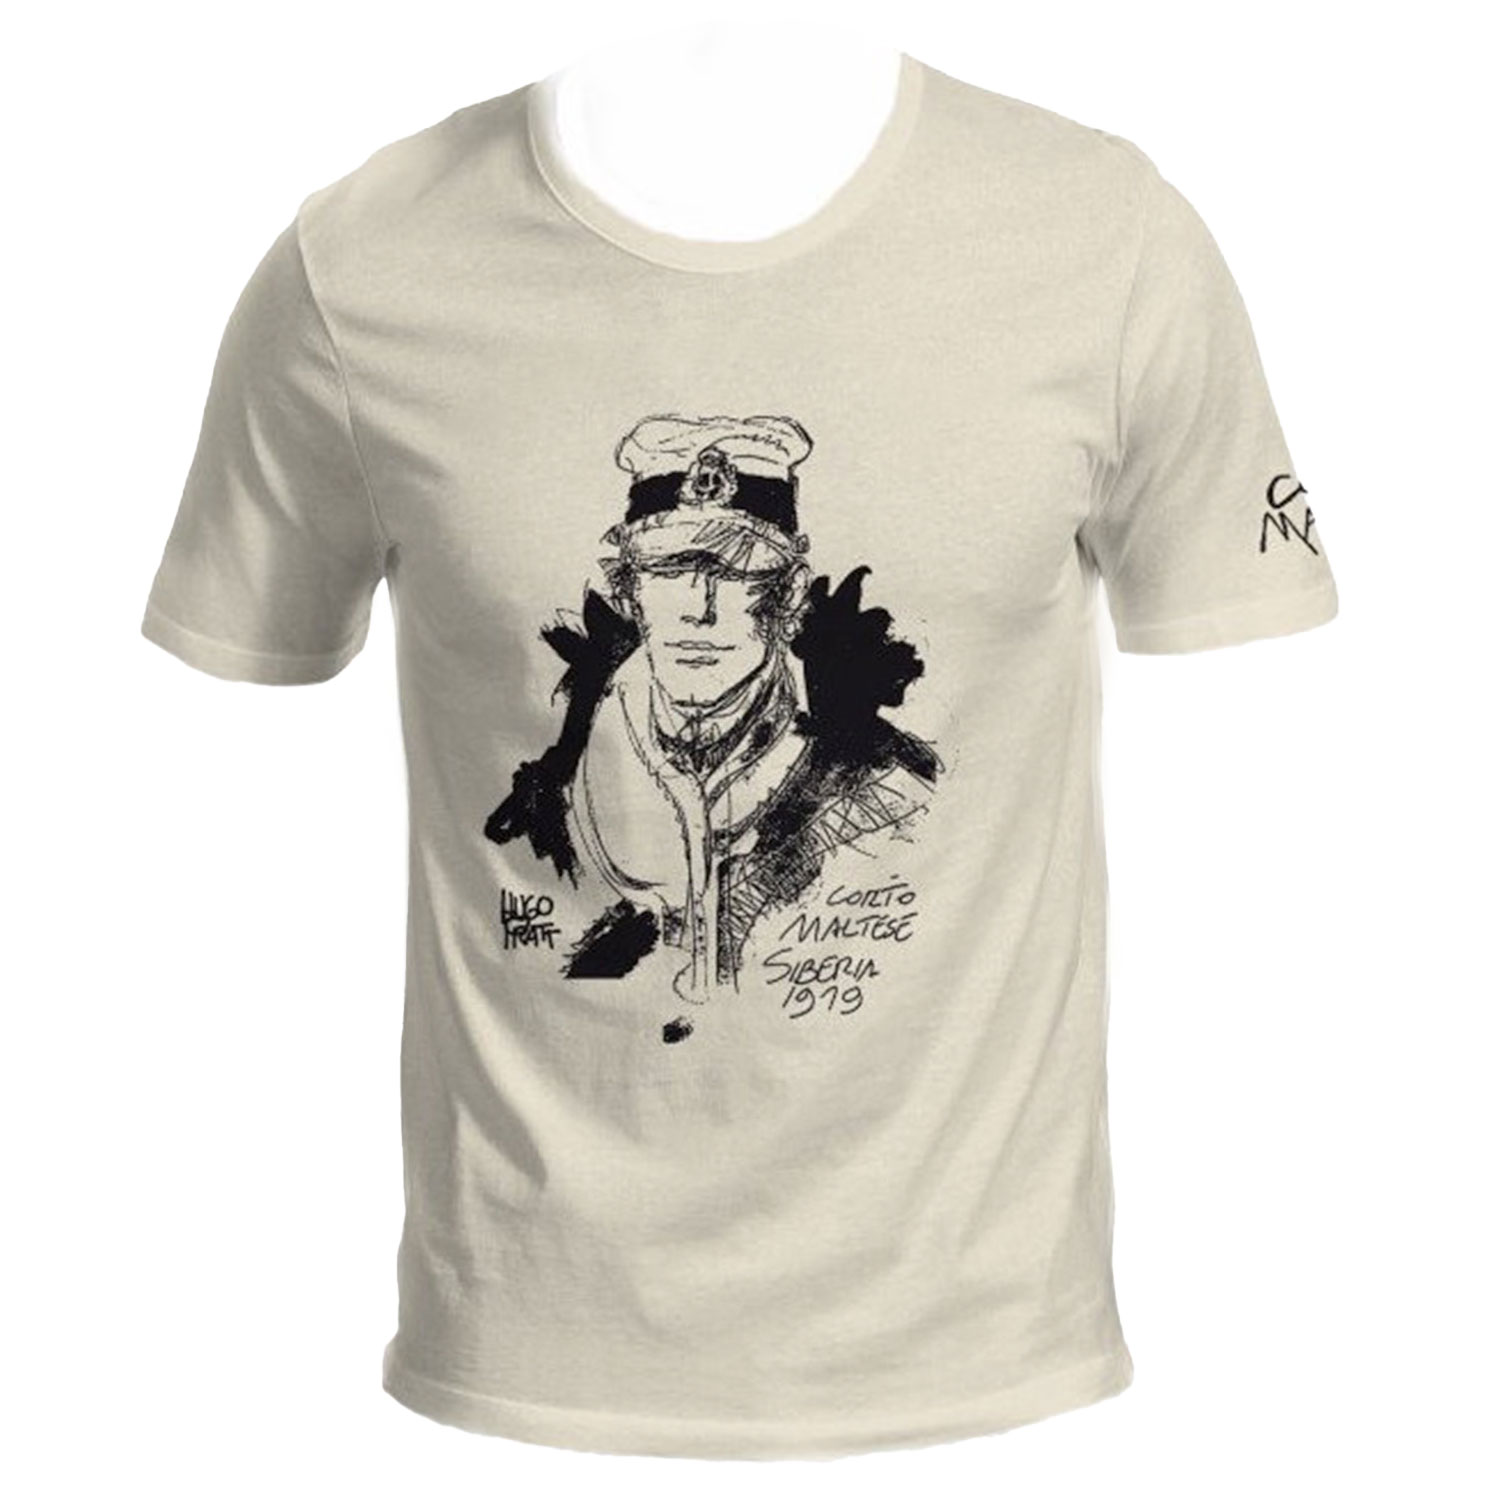 Hugo Pratt T-shirt : Corto Maltese , Siberia - Ecru - Size L